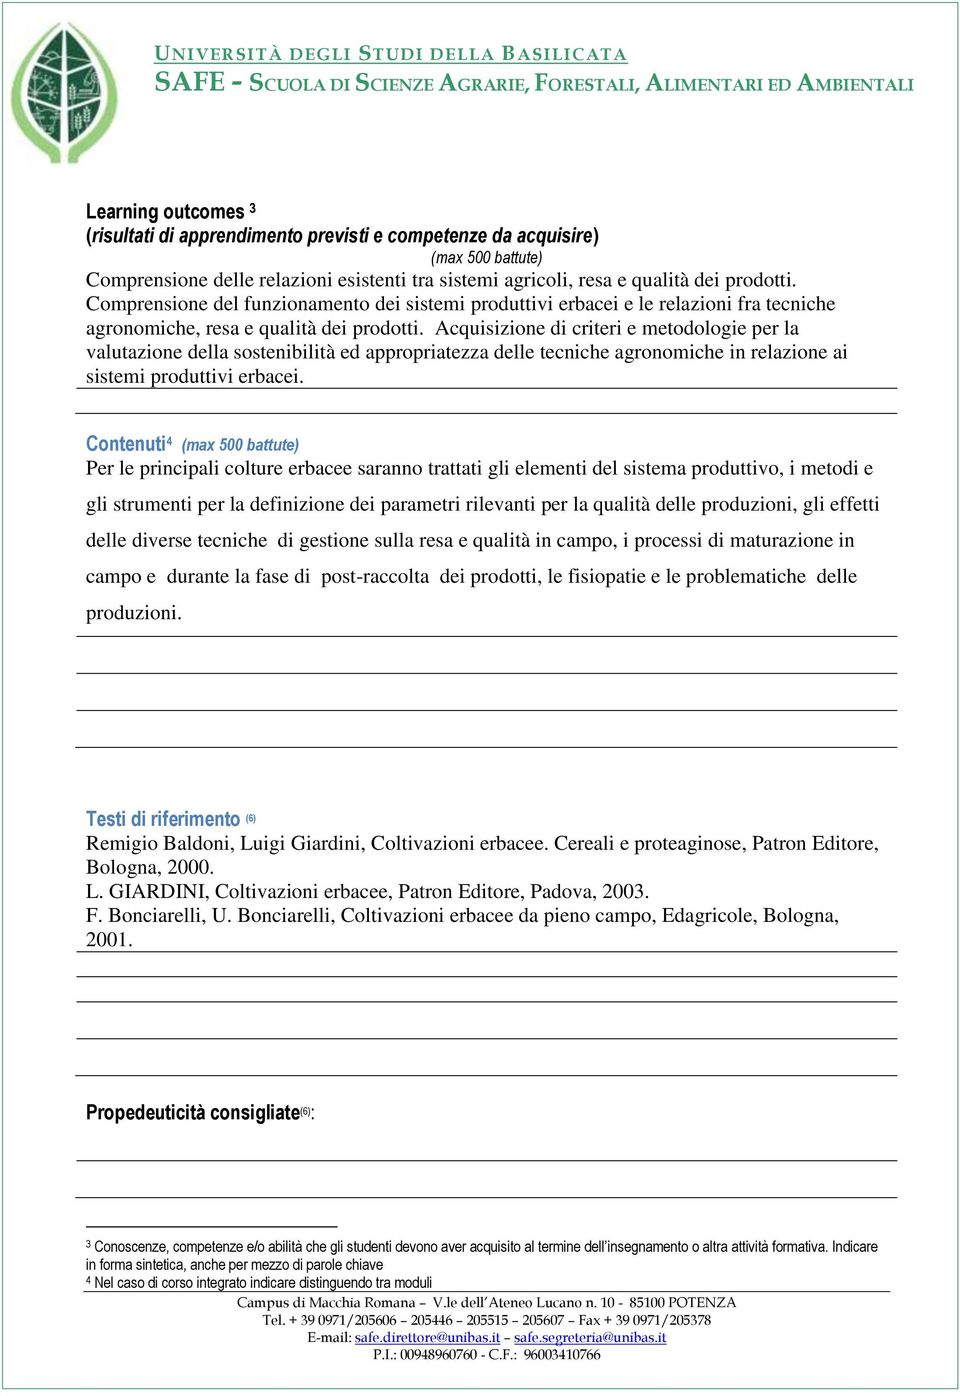 Acquisizione di criteri e metodologie per la valutazione della sostenibilità ed appropriatezza delle tecniche agronomiche in relazione ai sistemi produttivi erbacei.